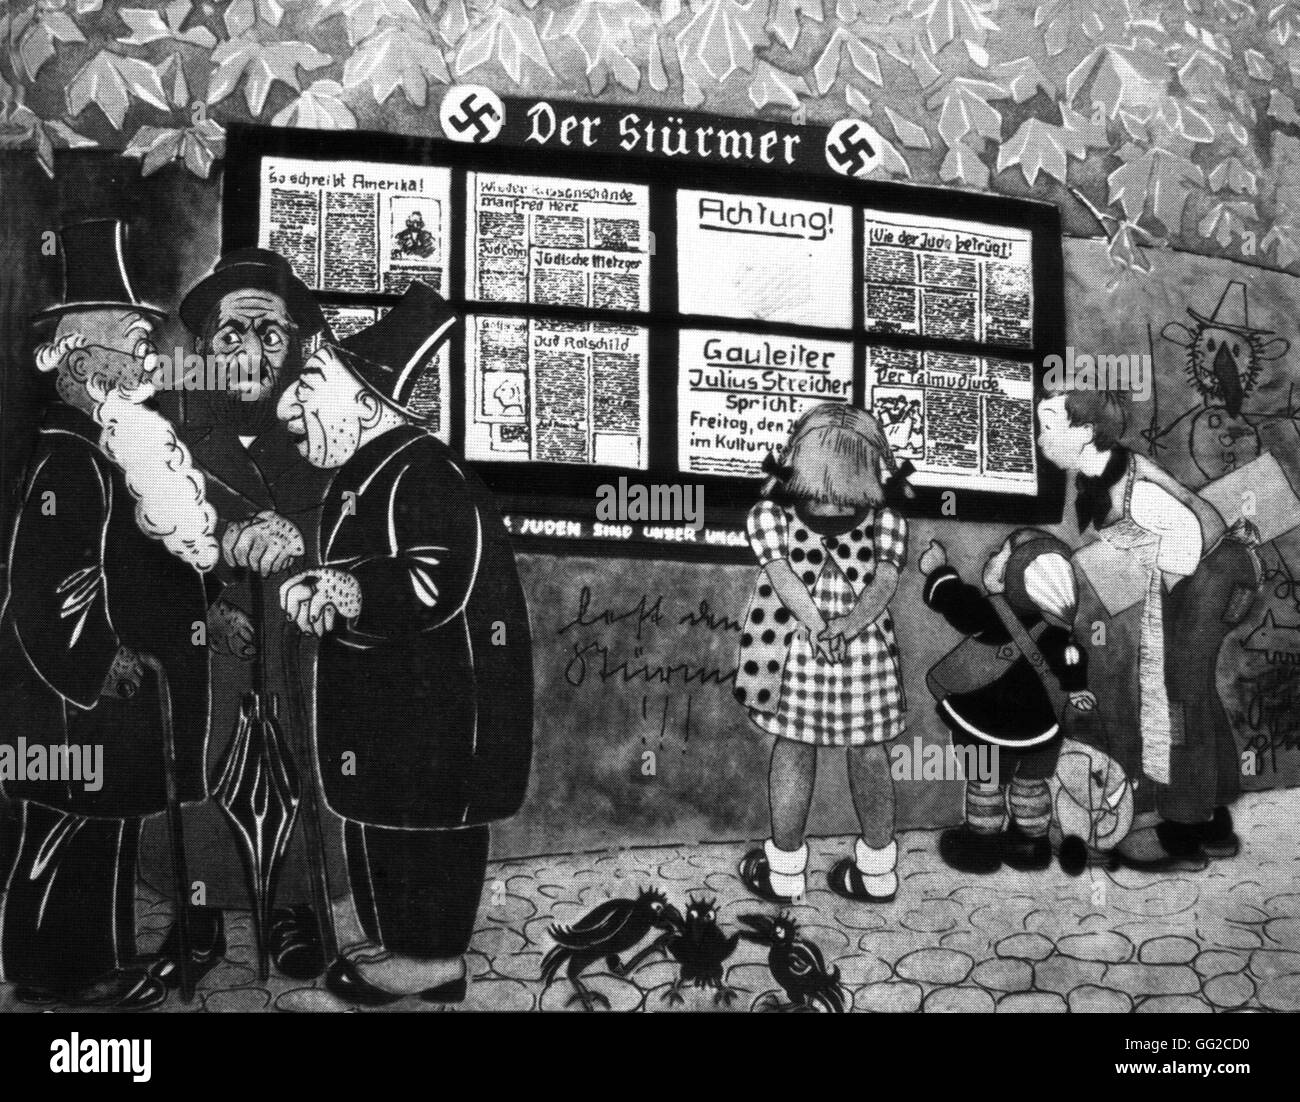 Dessin animé satirique antisémites d'un livre illustré pour enfants : Trois juifs âgés regarder enfants Aryens qui ont lu le journal antisémite "der Stürmer" 1935-1936 Allemagne Banque D'Images